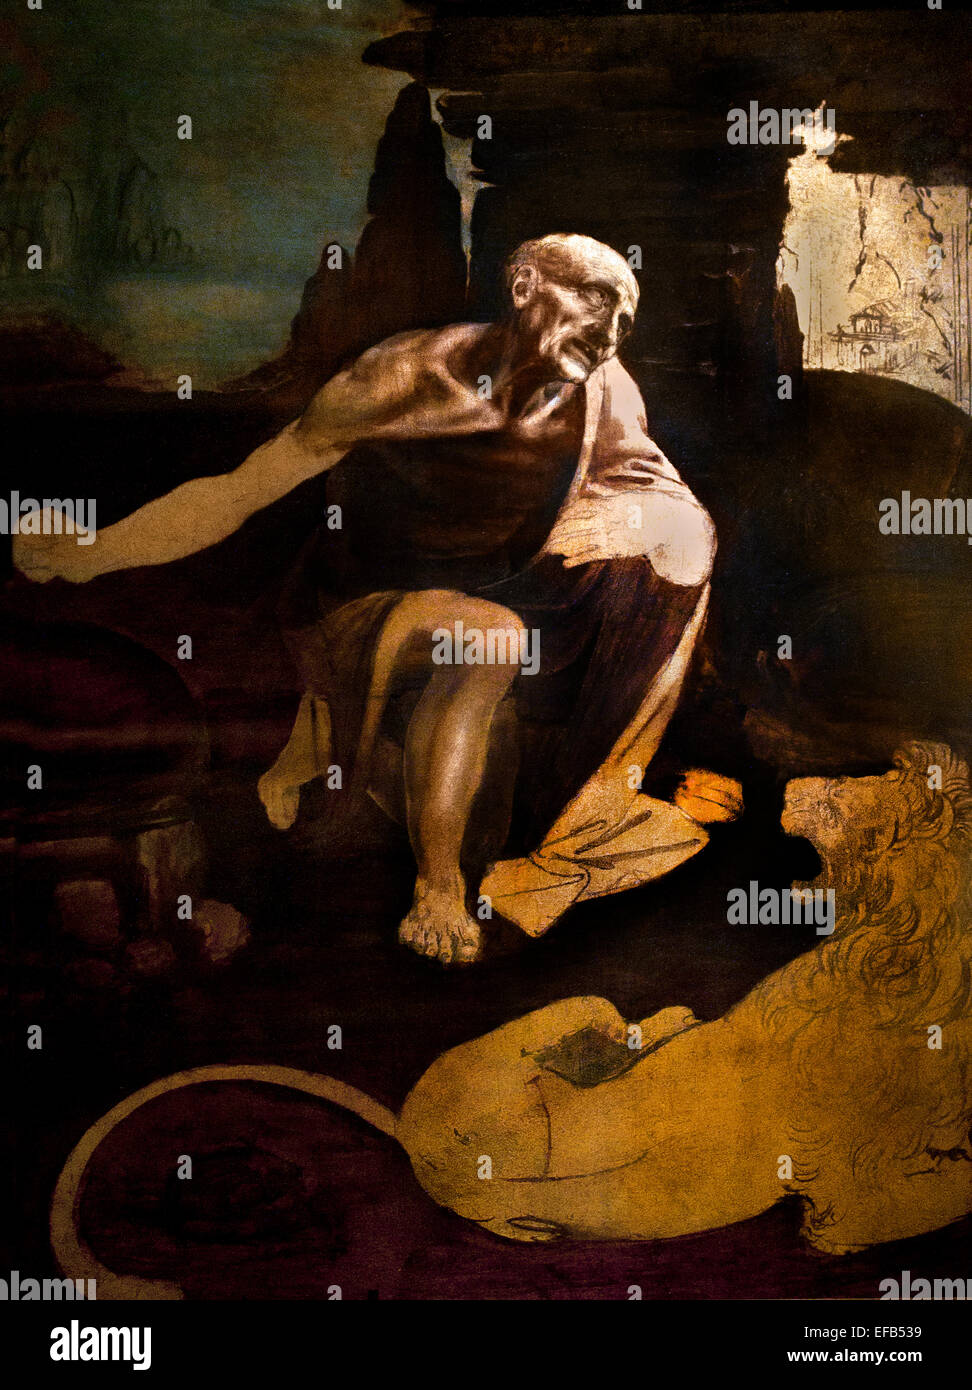 Saint Jerome1480 (Huile et Tempéra sur noyer) de Léonard de Vinci (1452-1519) Pinacothèque Musée du Vatican Rome Italie Banque D'Images